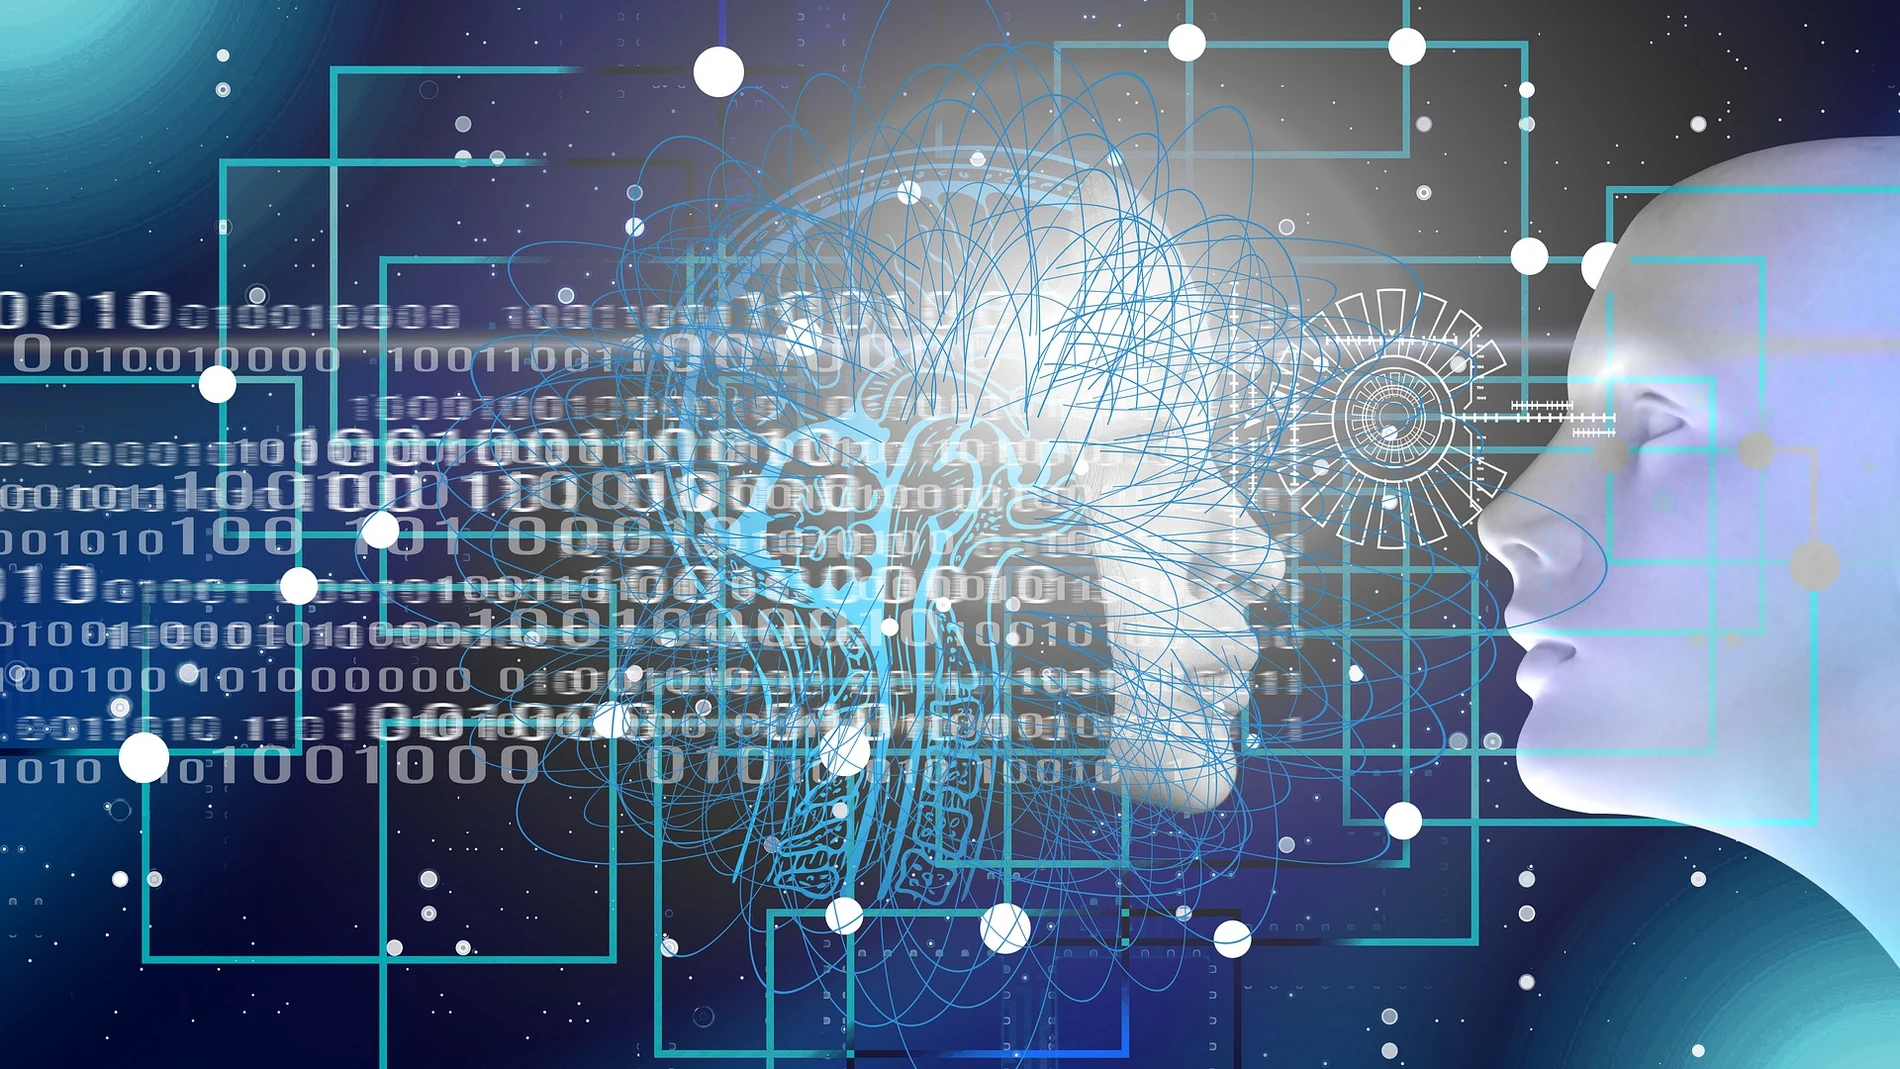 Representación de circuitos de ordenador y números sobre una cabeza biónica enfrentada a una cabeza humana